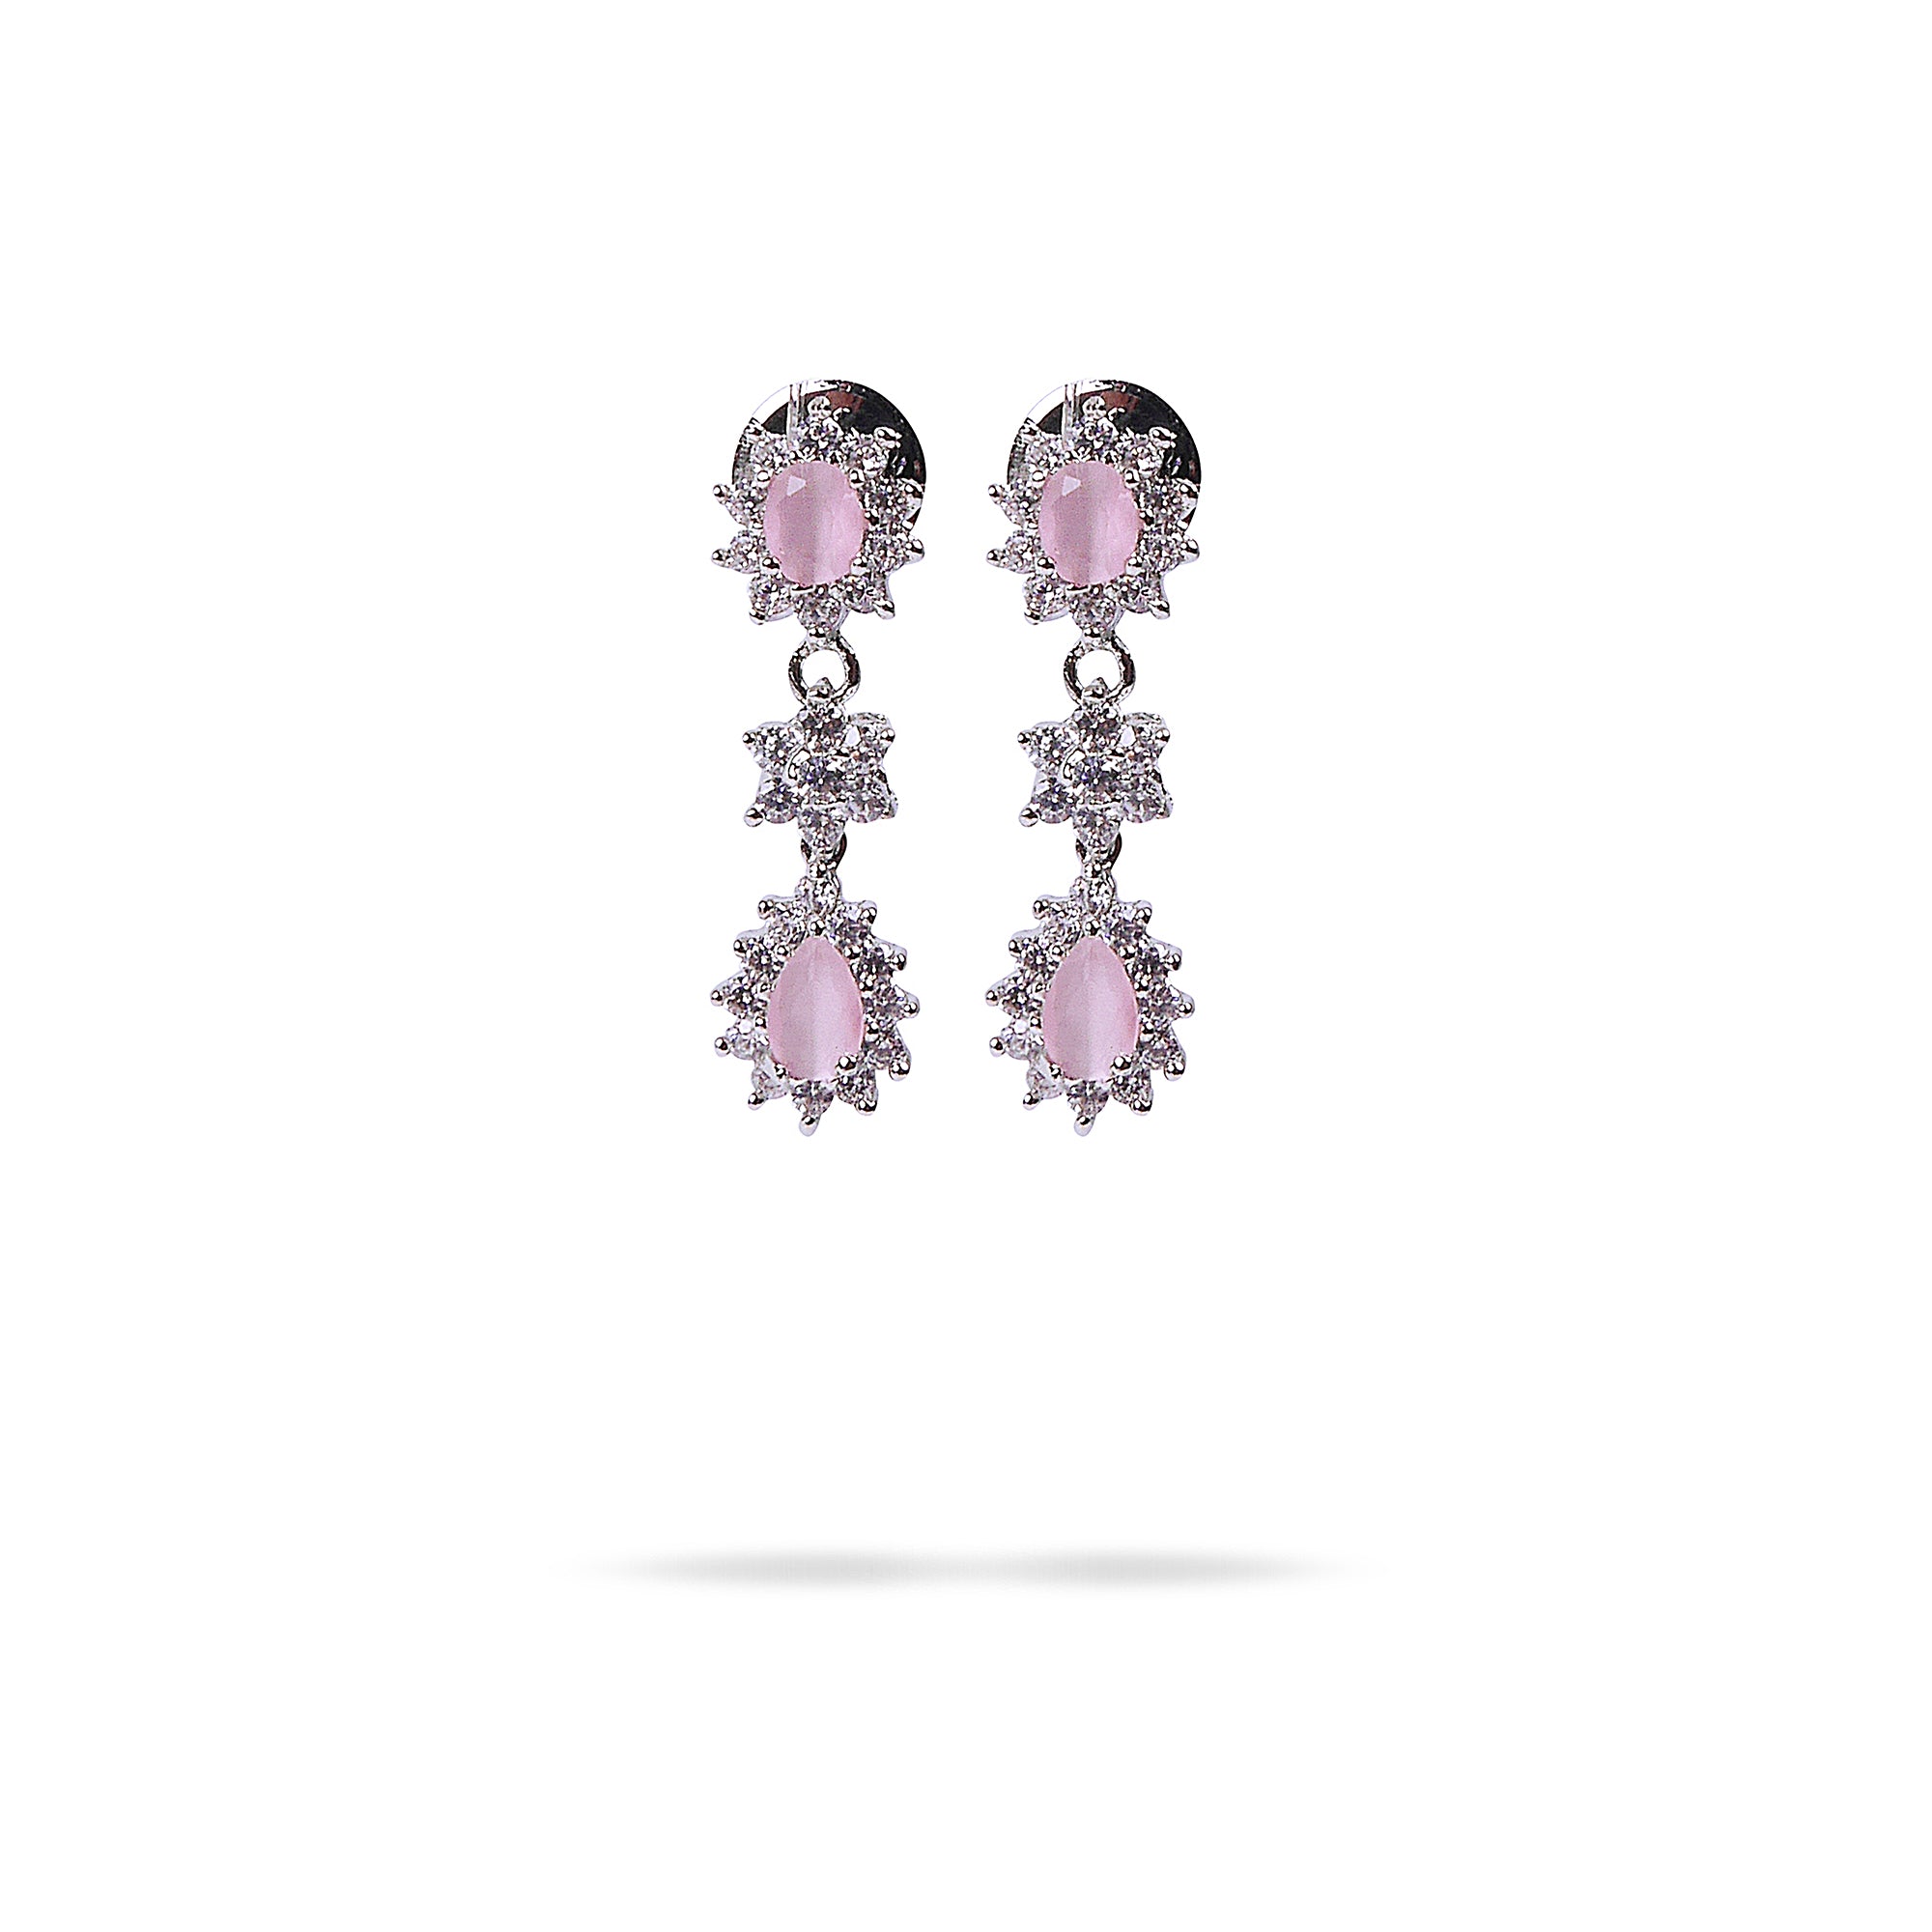 Teardrop Star Cubic Zirconia Earrings in Light Pink